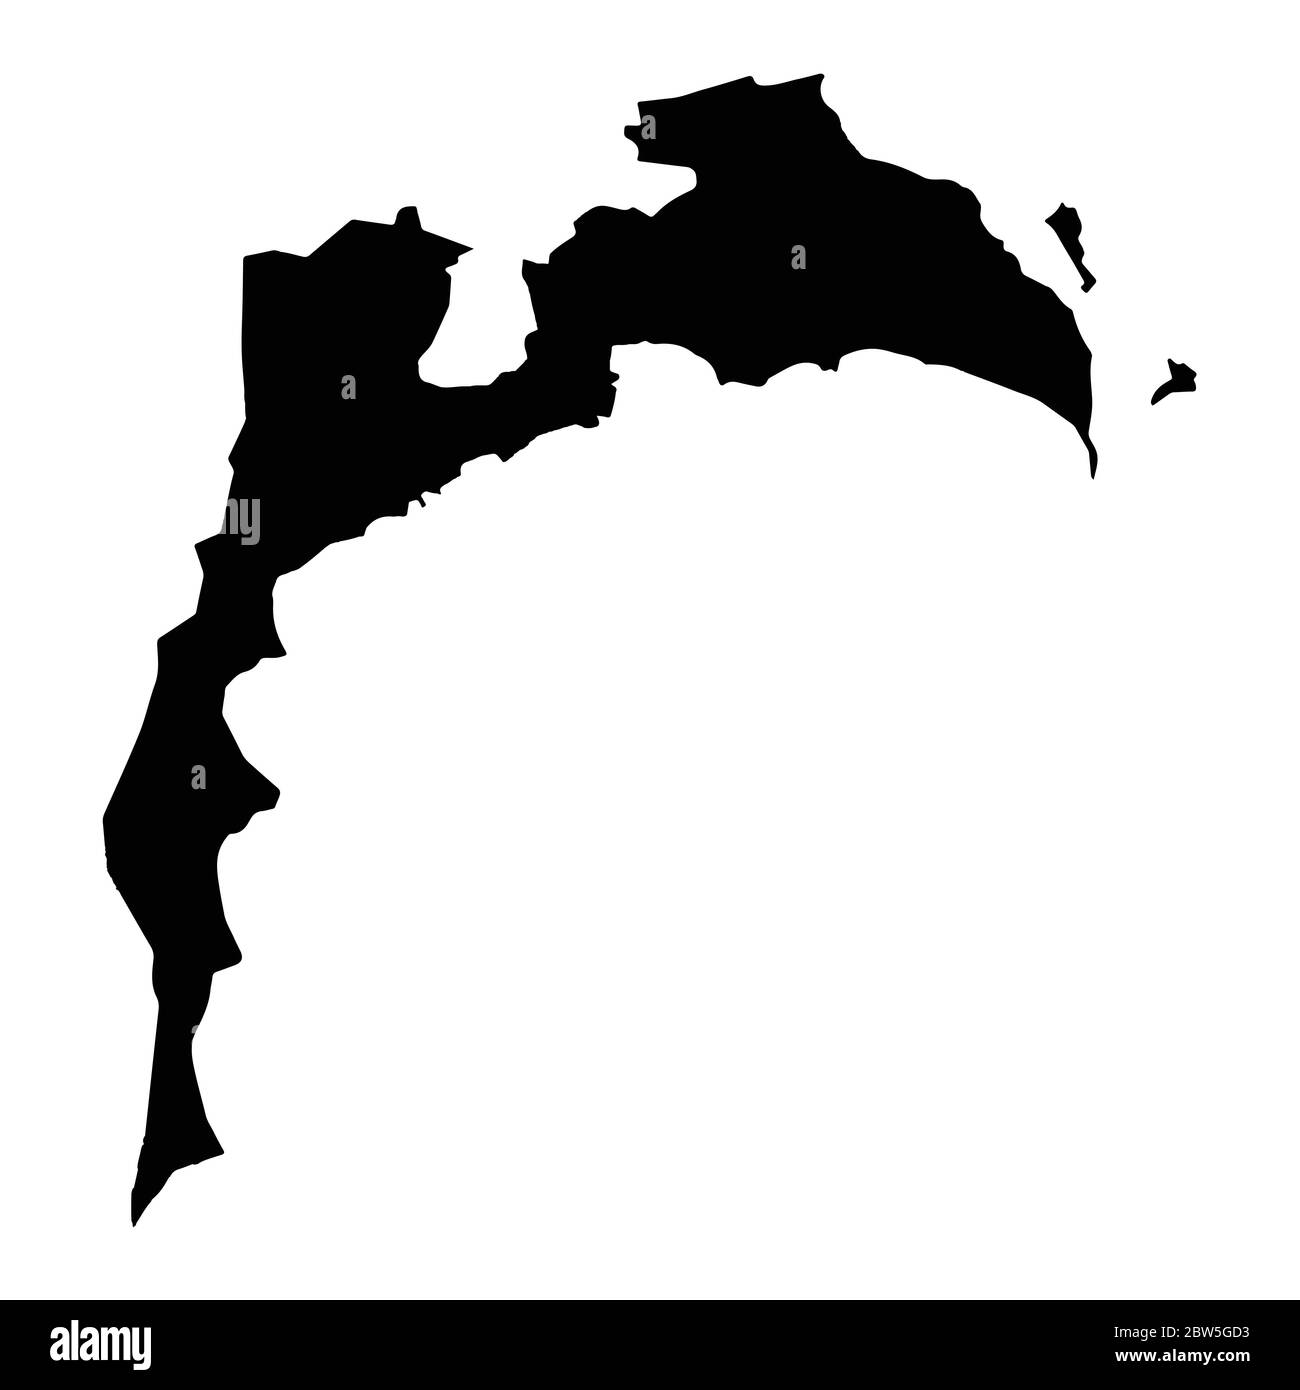 Mappa vettoriale Baku. Illustrazione vettoriale isolata. Nero su sfondo bianco. Illustrazione EPS 10. Illustrazione Vettoriale